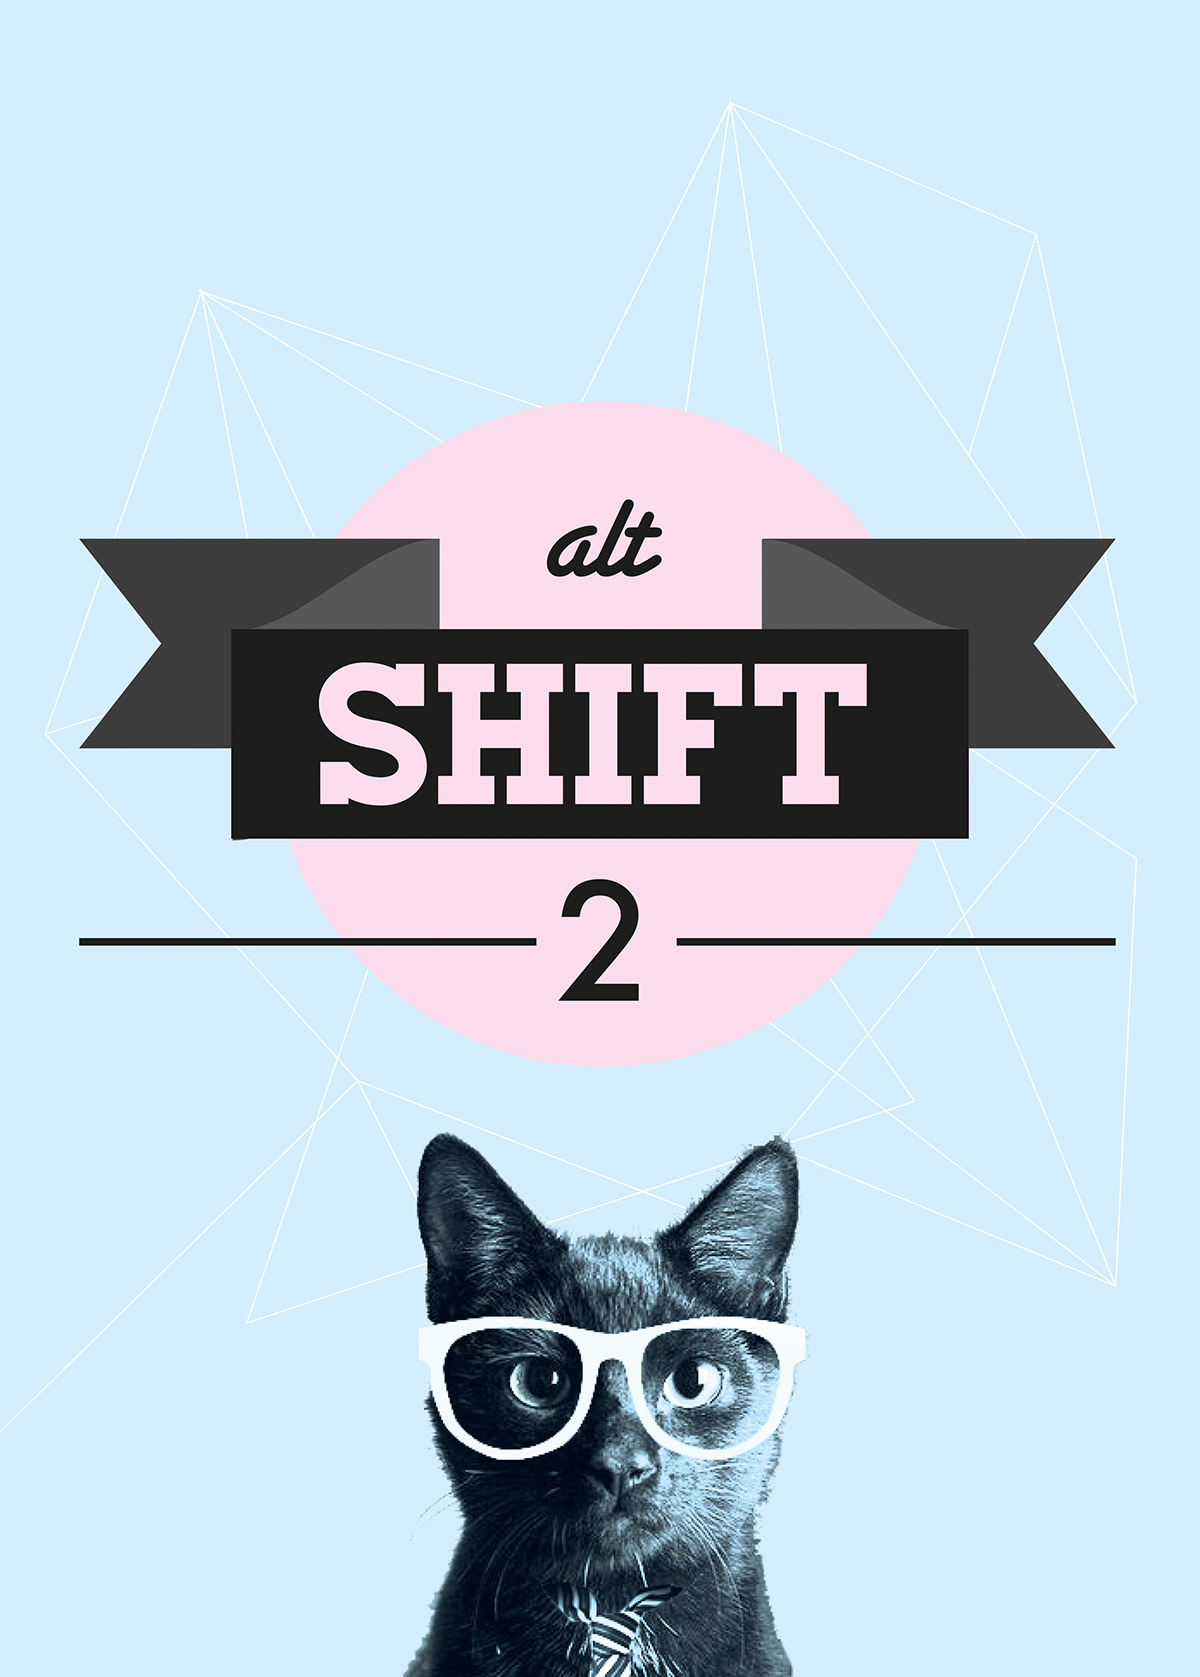 AltShift2